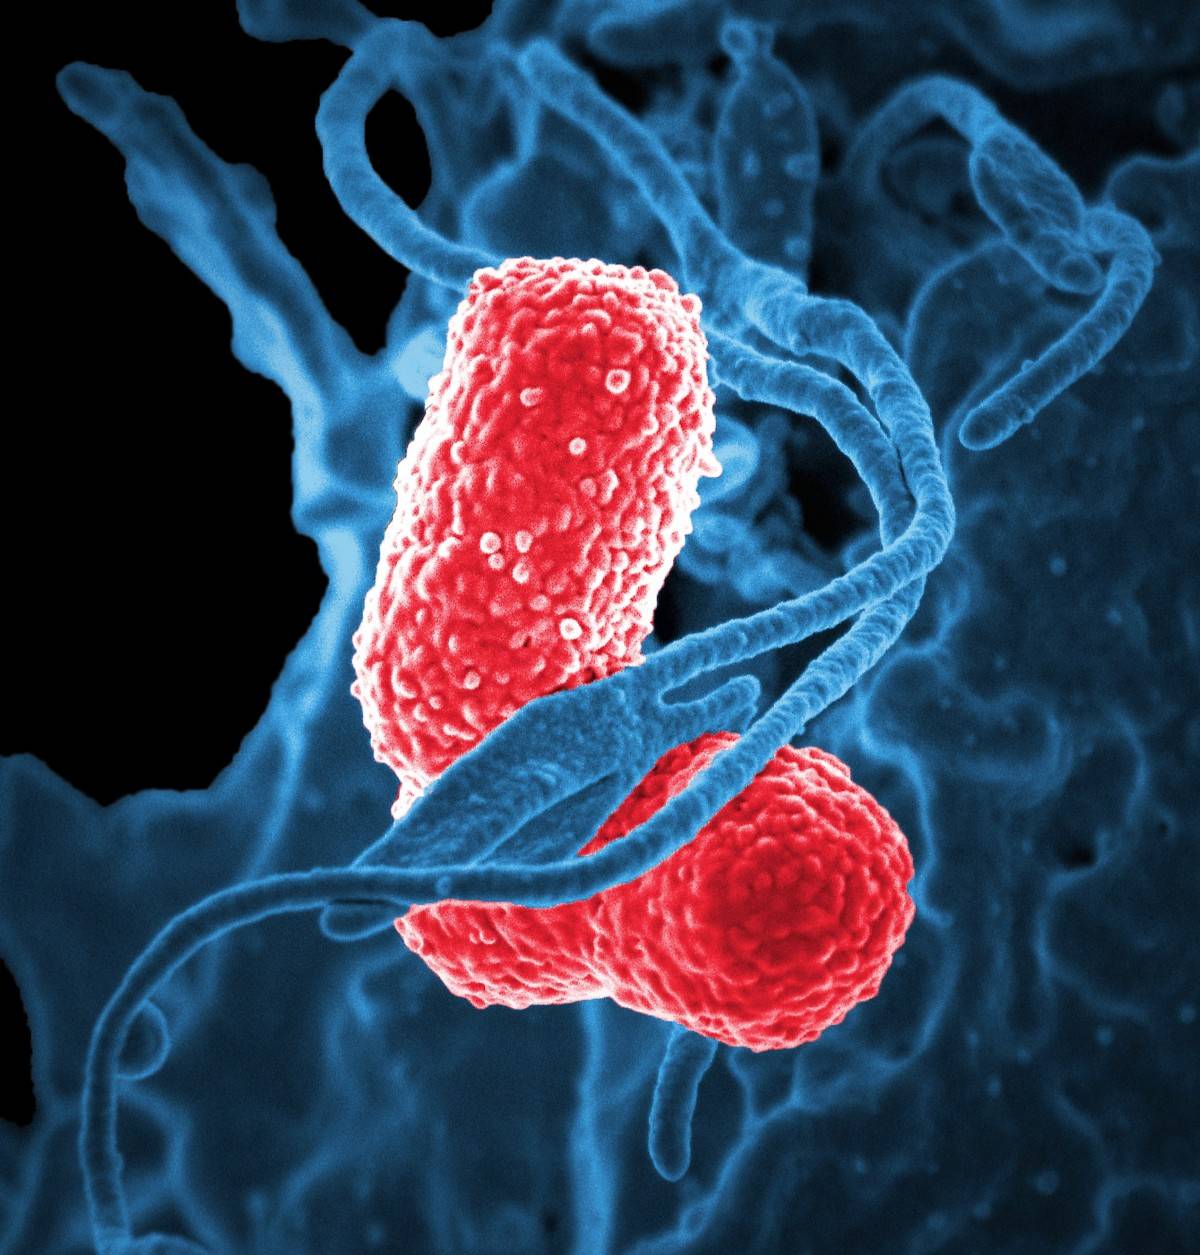 bactérie vue au microscope électronique